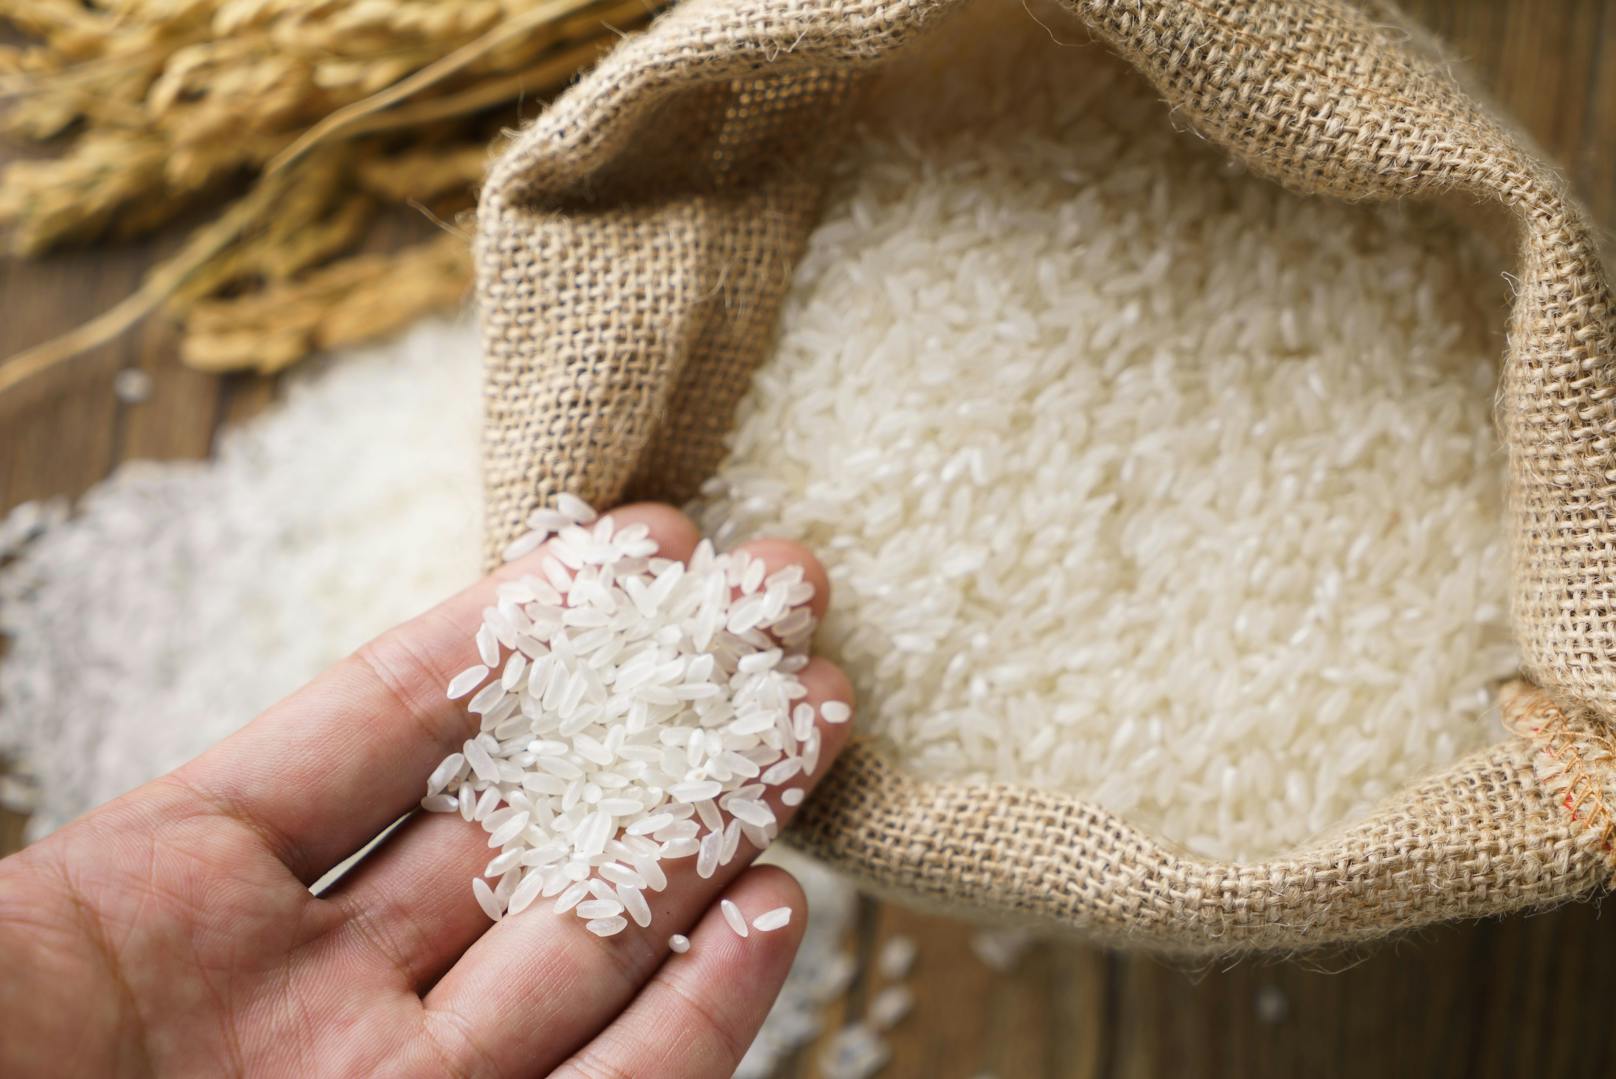 <strong>Reis: </strong>Bacillus cereus ist ein sporenbildendes Bakterium unter anderem in Reis. Hitze tötet zwar den Keim ab, die Sporen können aber überleben. In geringer Zahl ist das Bakterium nicht schädlich, in großen Mengen kann es aber eine Magen-Darm-Infektion verursachen. Bacillus cereus vermehrt sich bei Temperaturen zwischen sieben und 50 Grad. Reis sollte daher kühl gelagert und lange Warmhaltephasen vermieden werden.